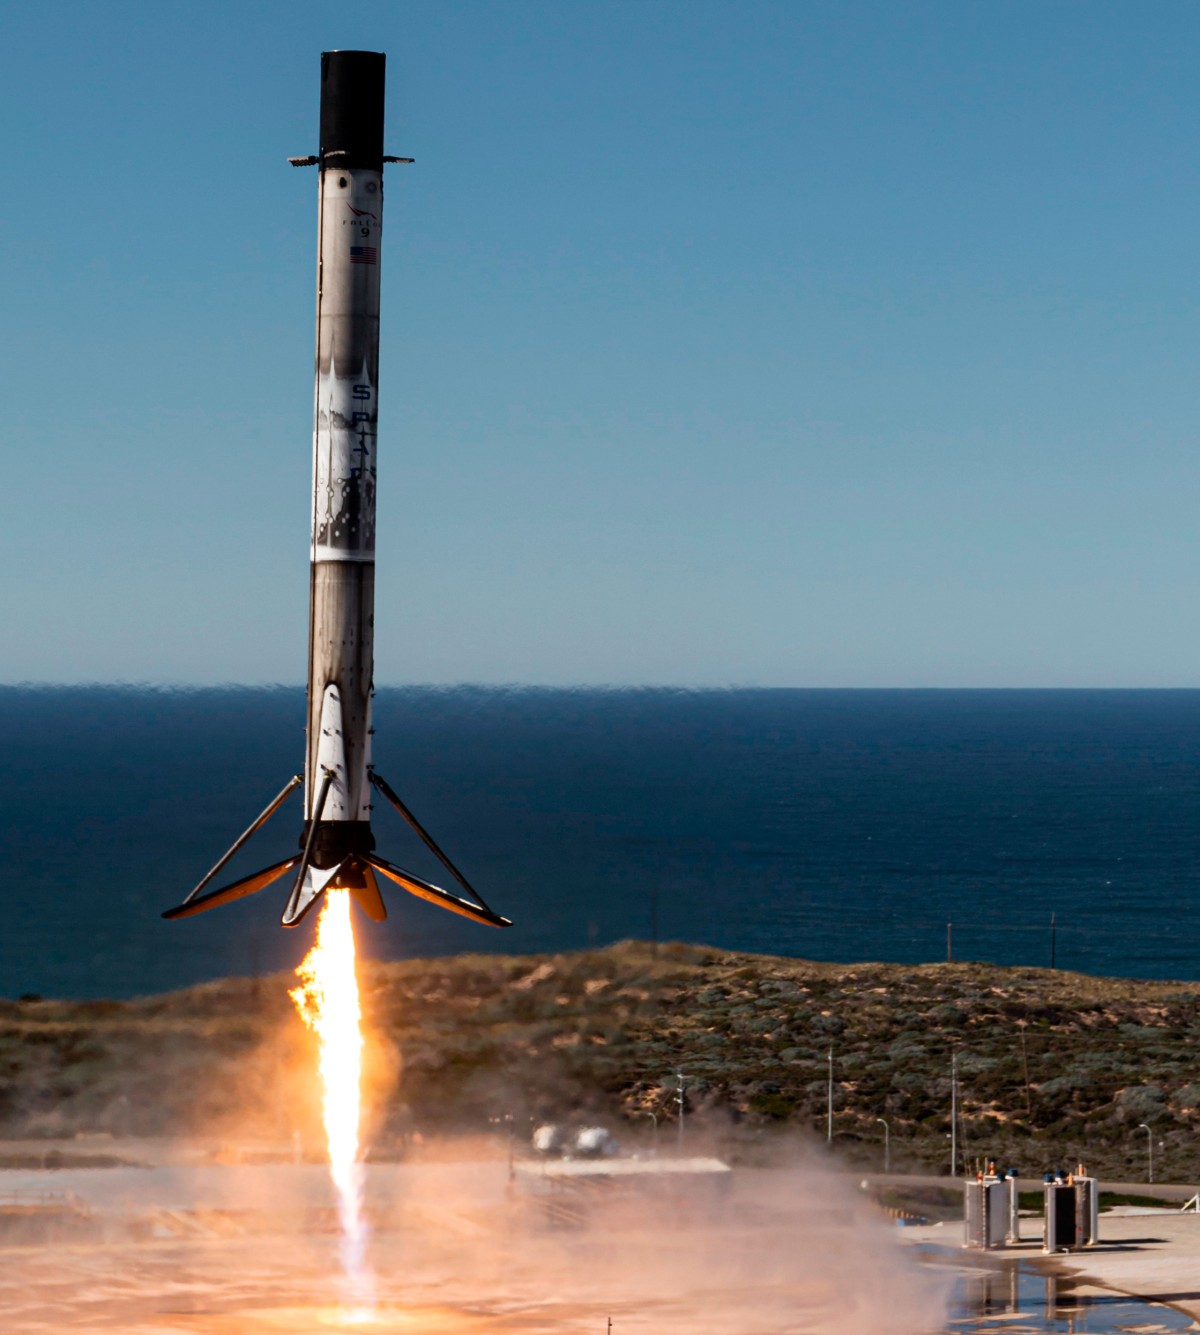 Bei der „Falcon 9“ kann die erste Raketenstufe und die Schutzverkleidung für die Satelliten an der Spitze der Rakete wiederverwendet werden. Im Bild ist die erste Stufe bei der Landung zu sehen: Bei der „Falcon 9“ kann die erste Raketenstufe und die Schutzverkleidung für die Satelliten an der Spitze der Rakete wiederverwendet werden. Im Bild ist die erste Stufe bei der Landung zu sehen